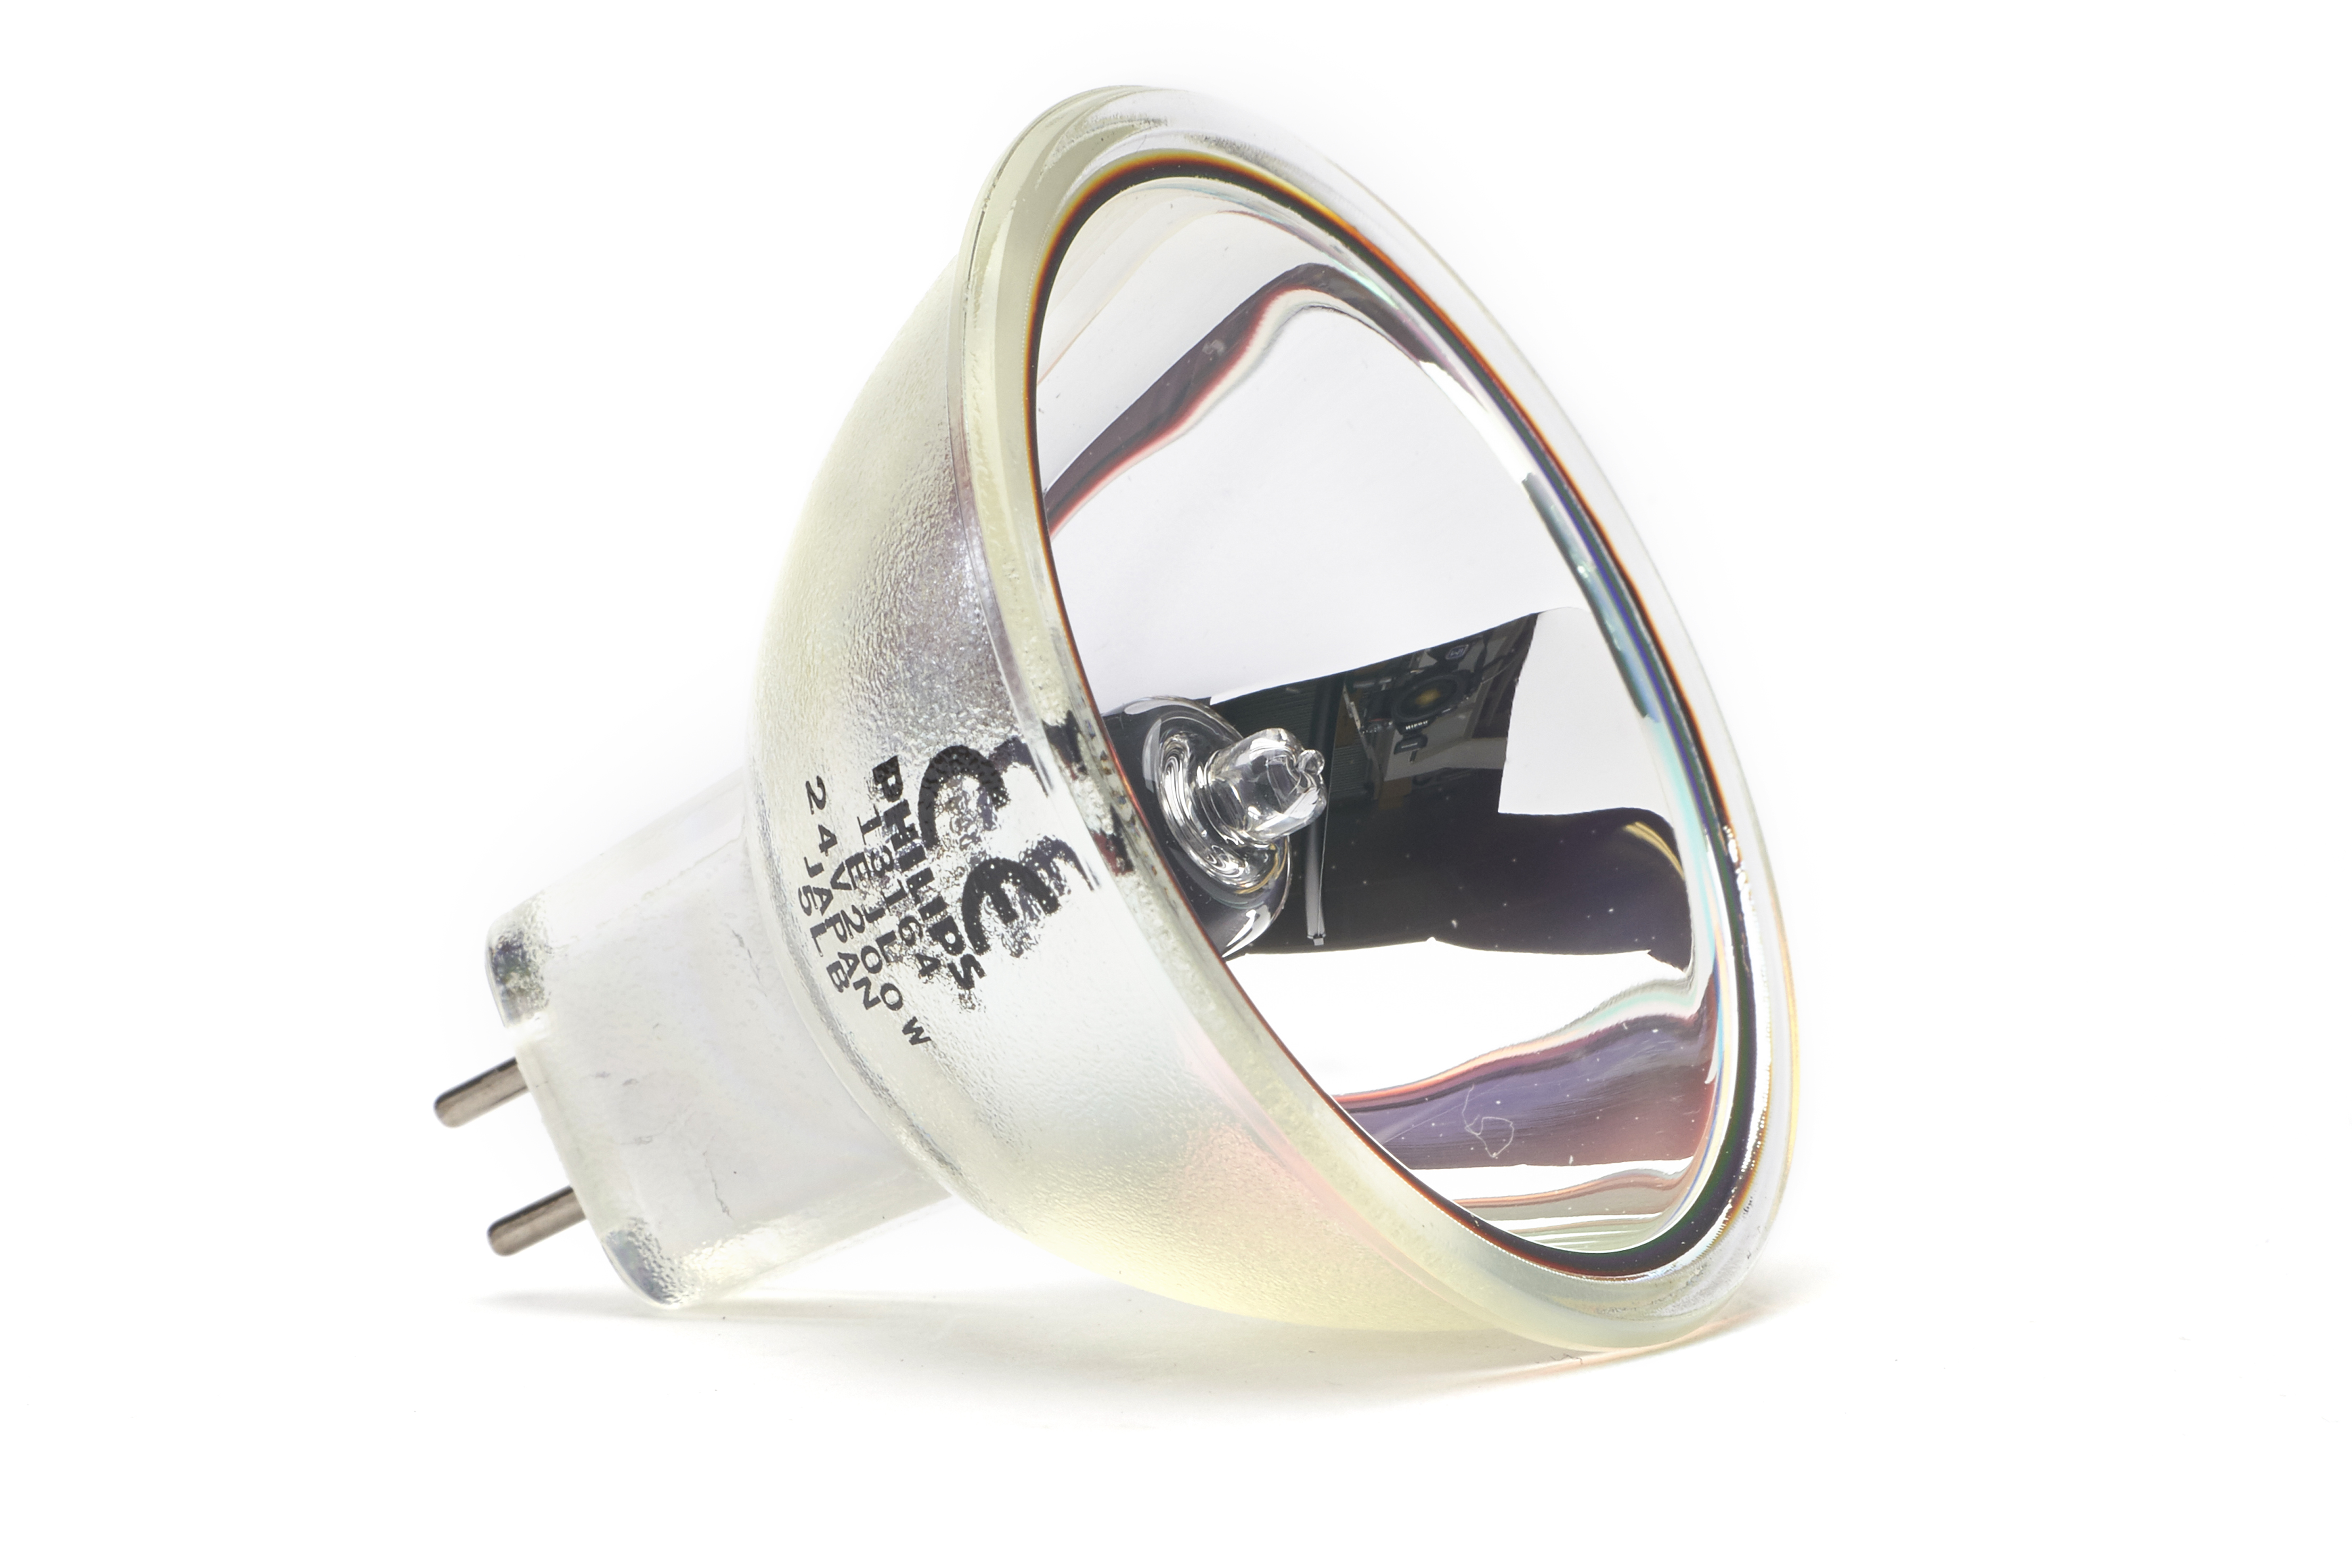 Osram A1/259 Halogen Lamp with Reflector MR16 64653 HLX ELC GX5.3 24v 250w